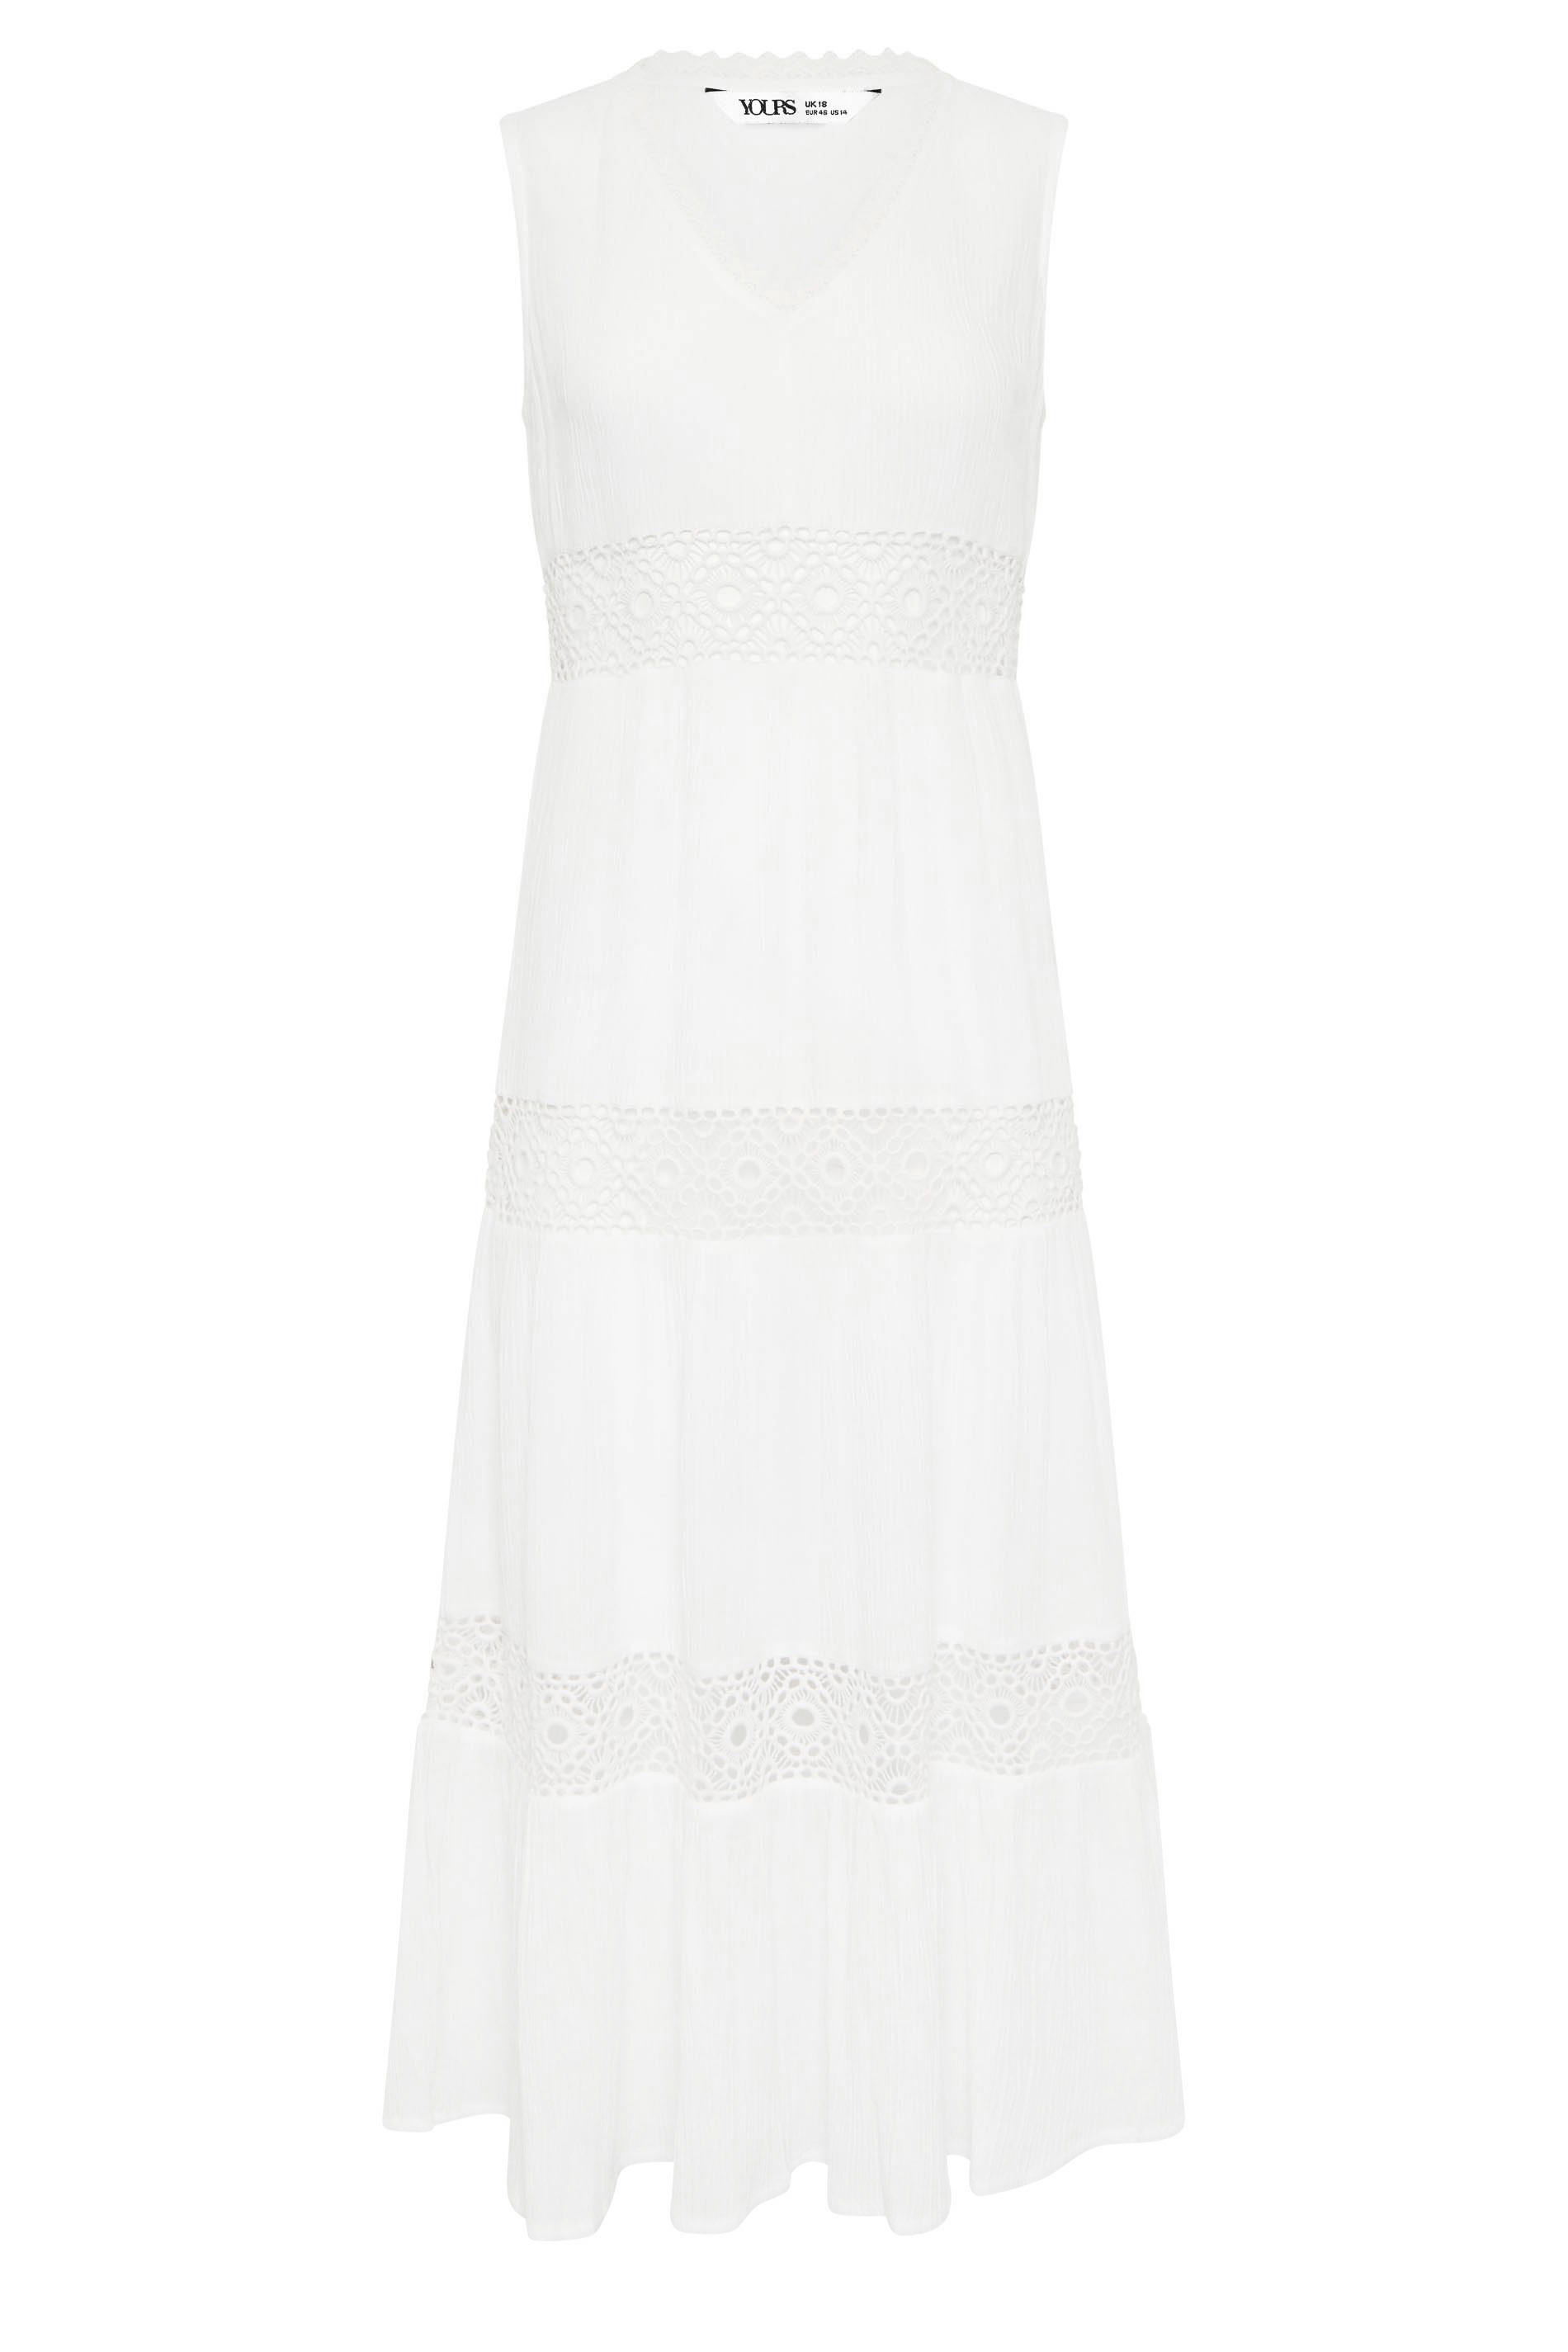 YOURS PETITE Plus Size White Crochet Trim Maxi Dress | PixieGirl ...